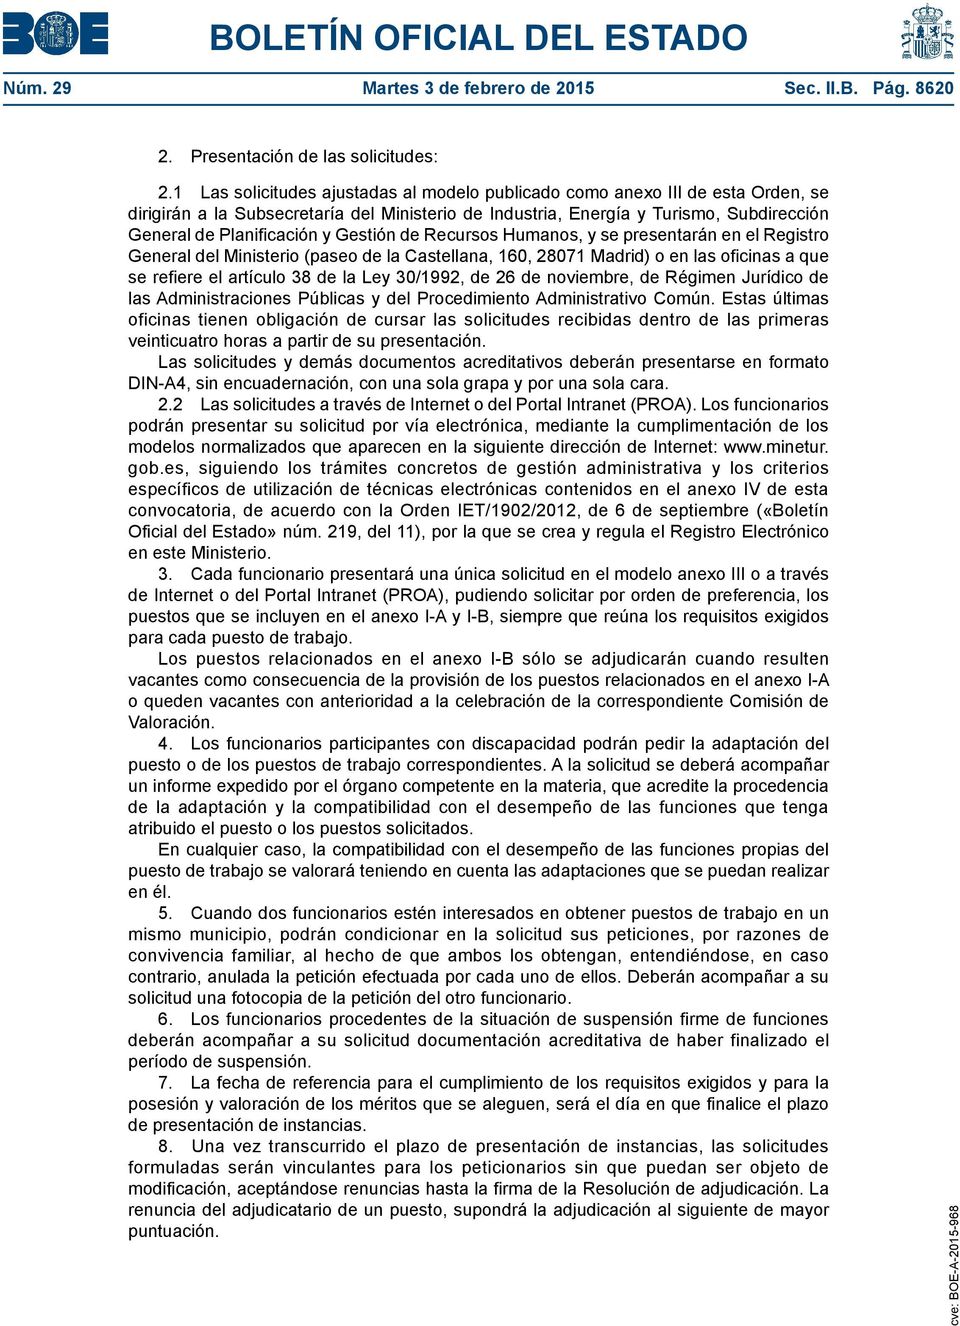 Gestión de Recursos Humanos, y se presentarán en el Registro General del Ministerio (paseo de la Castellana, 160, 28071 Madrid) o en las oficinas a que se refiere el artículo 38 de la Ley 30/1992, de